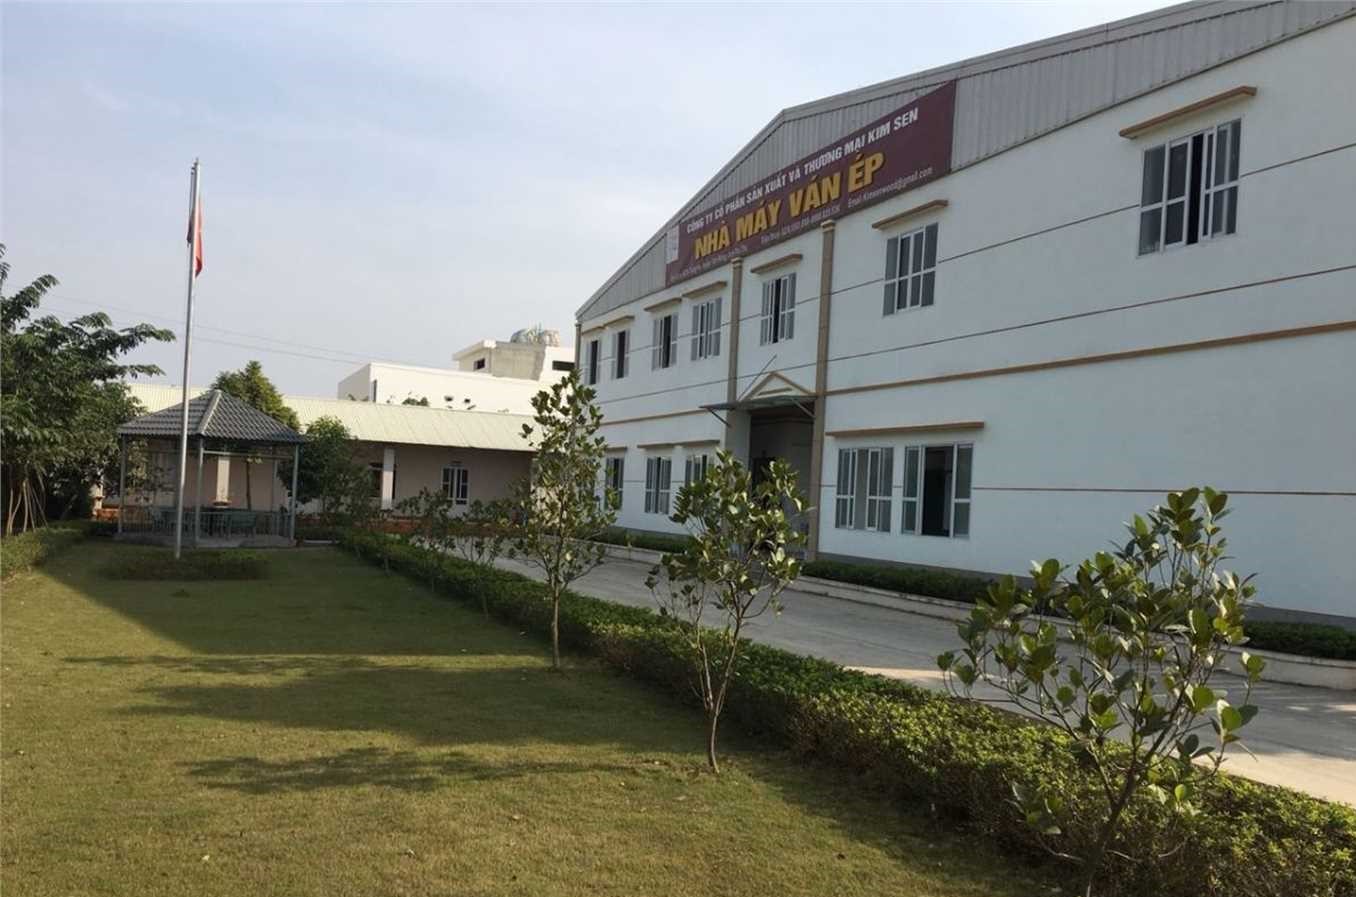 Khu công nghiệp Trung Hà - Phú Thọ